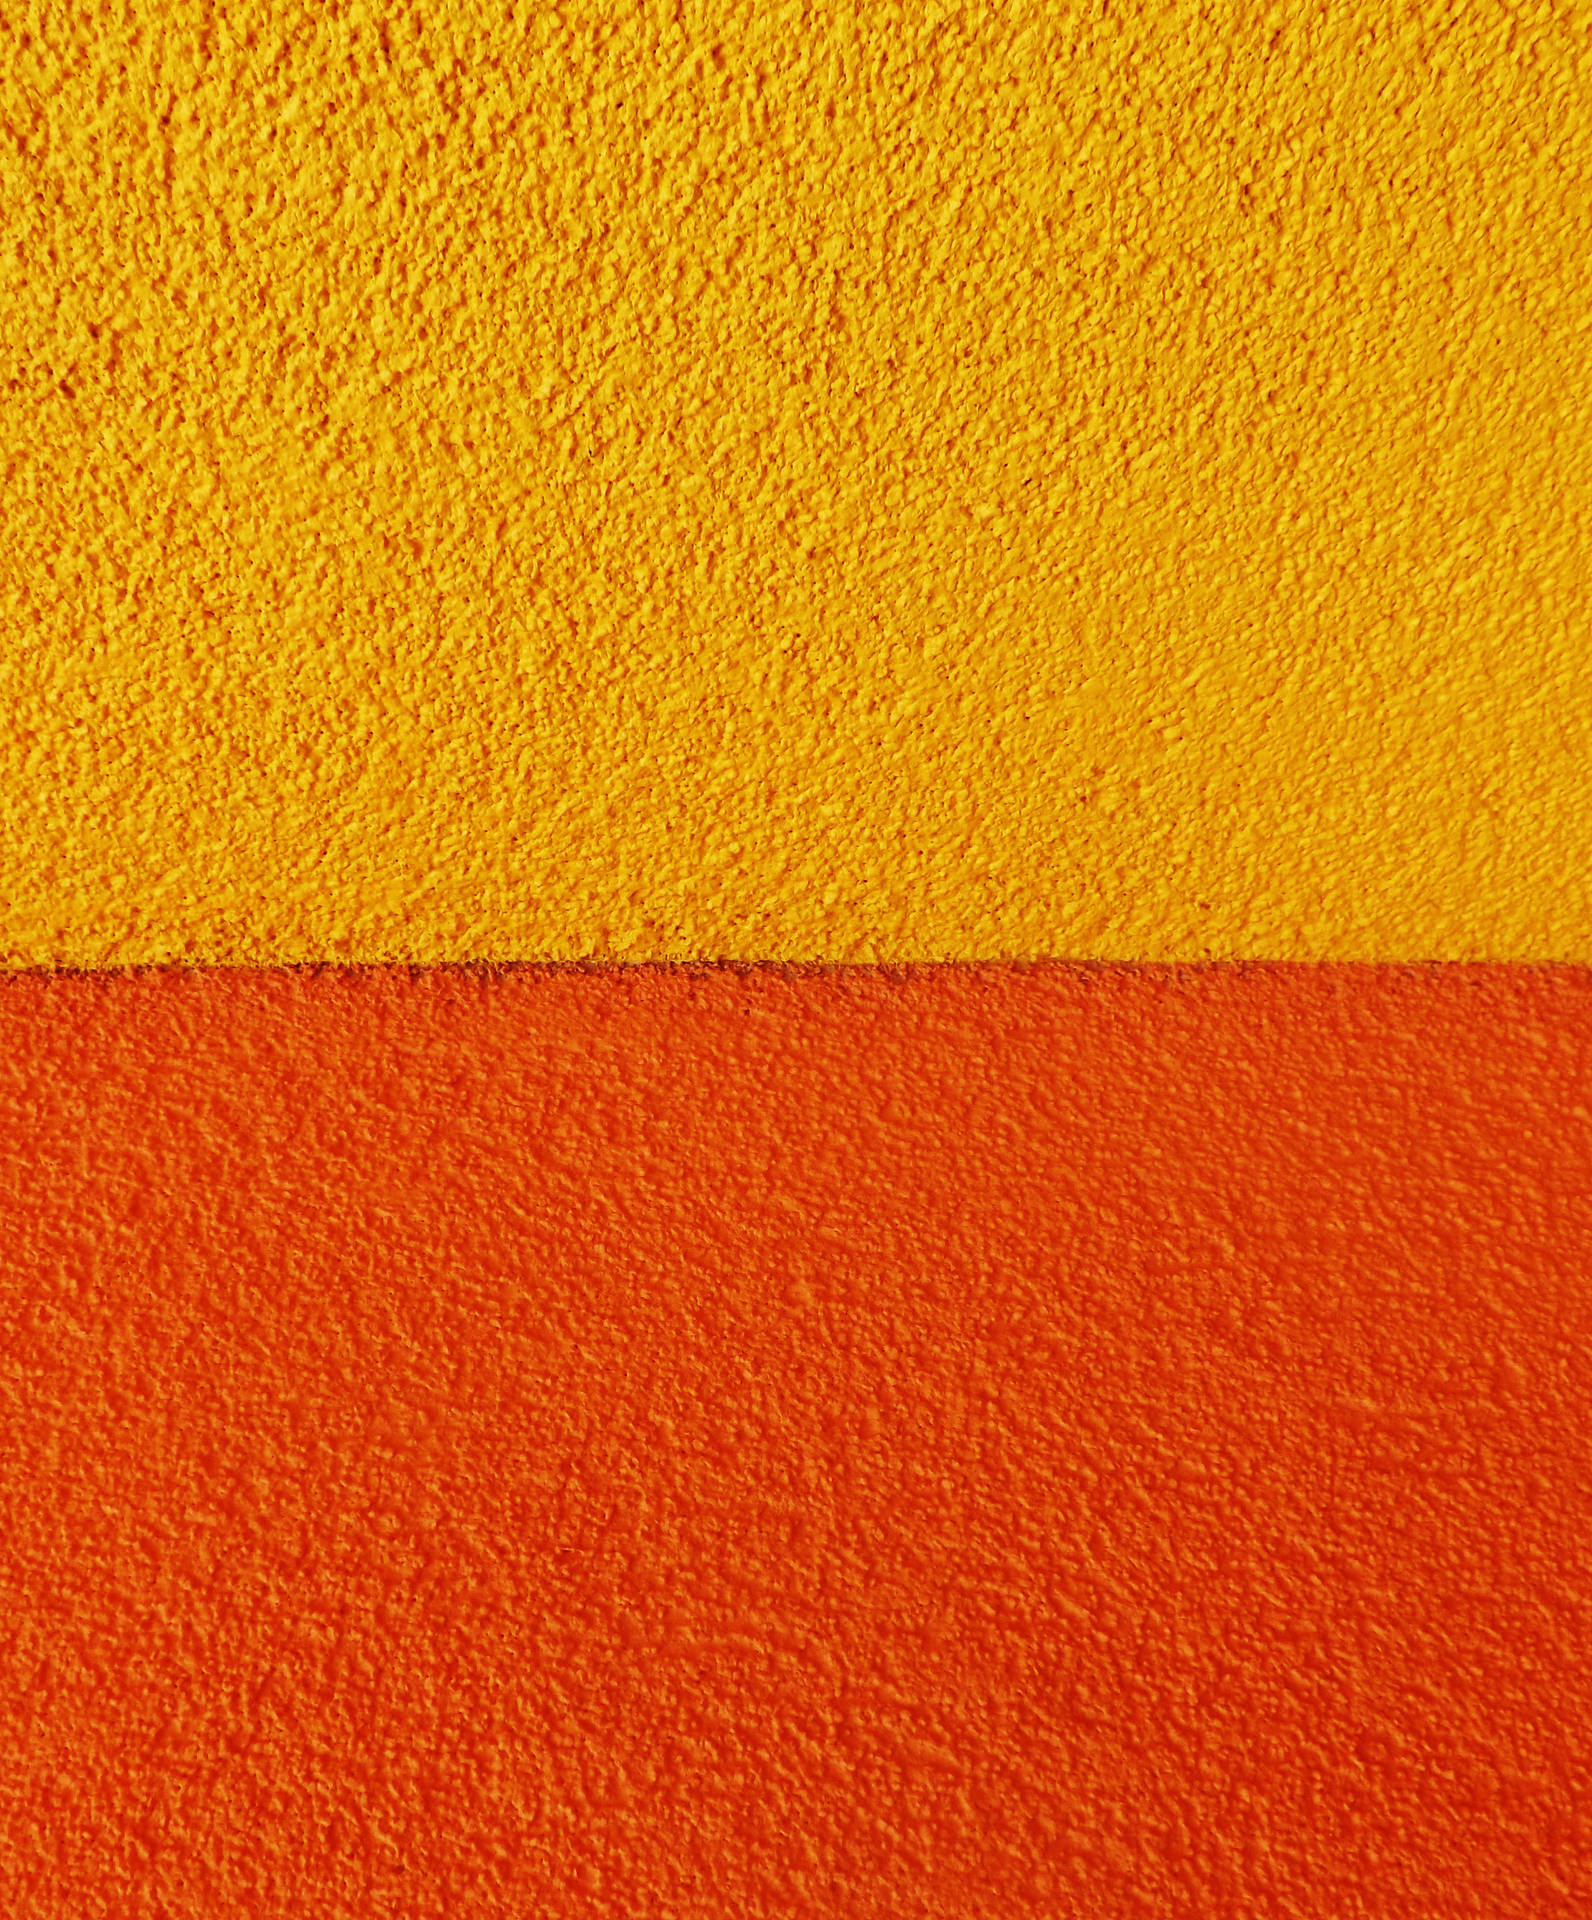 Textured Orange And Yellow Concrete